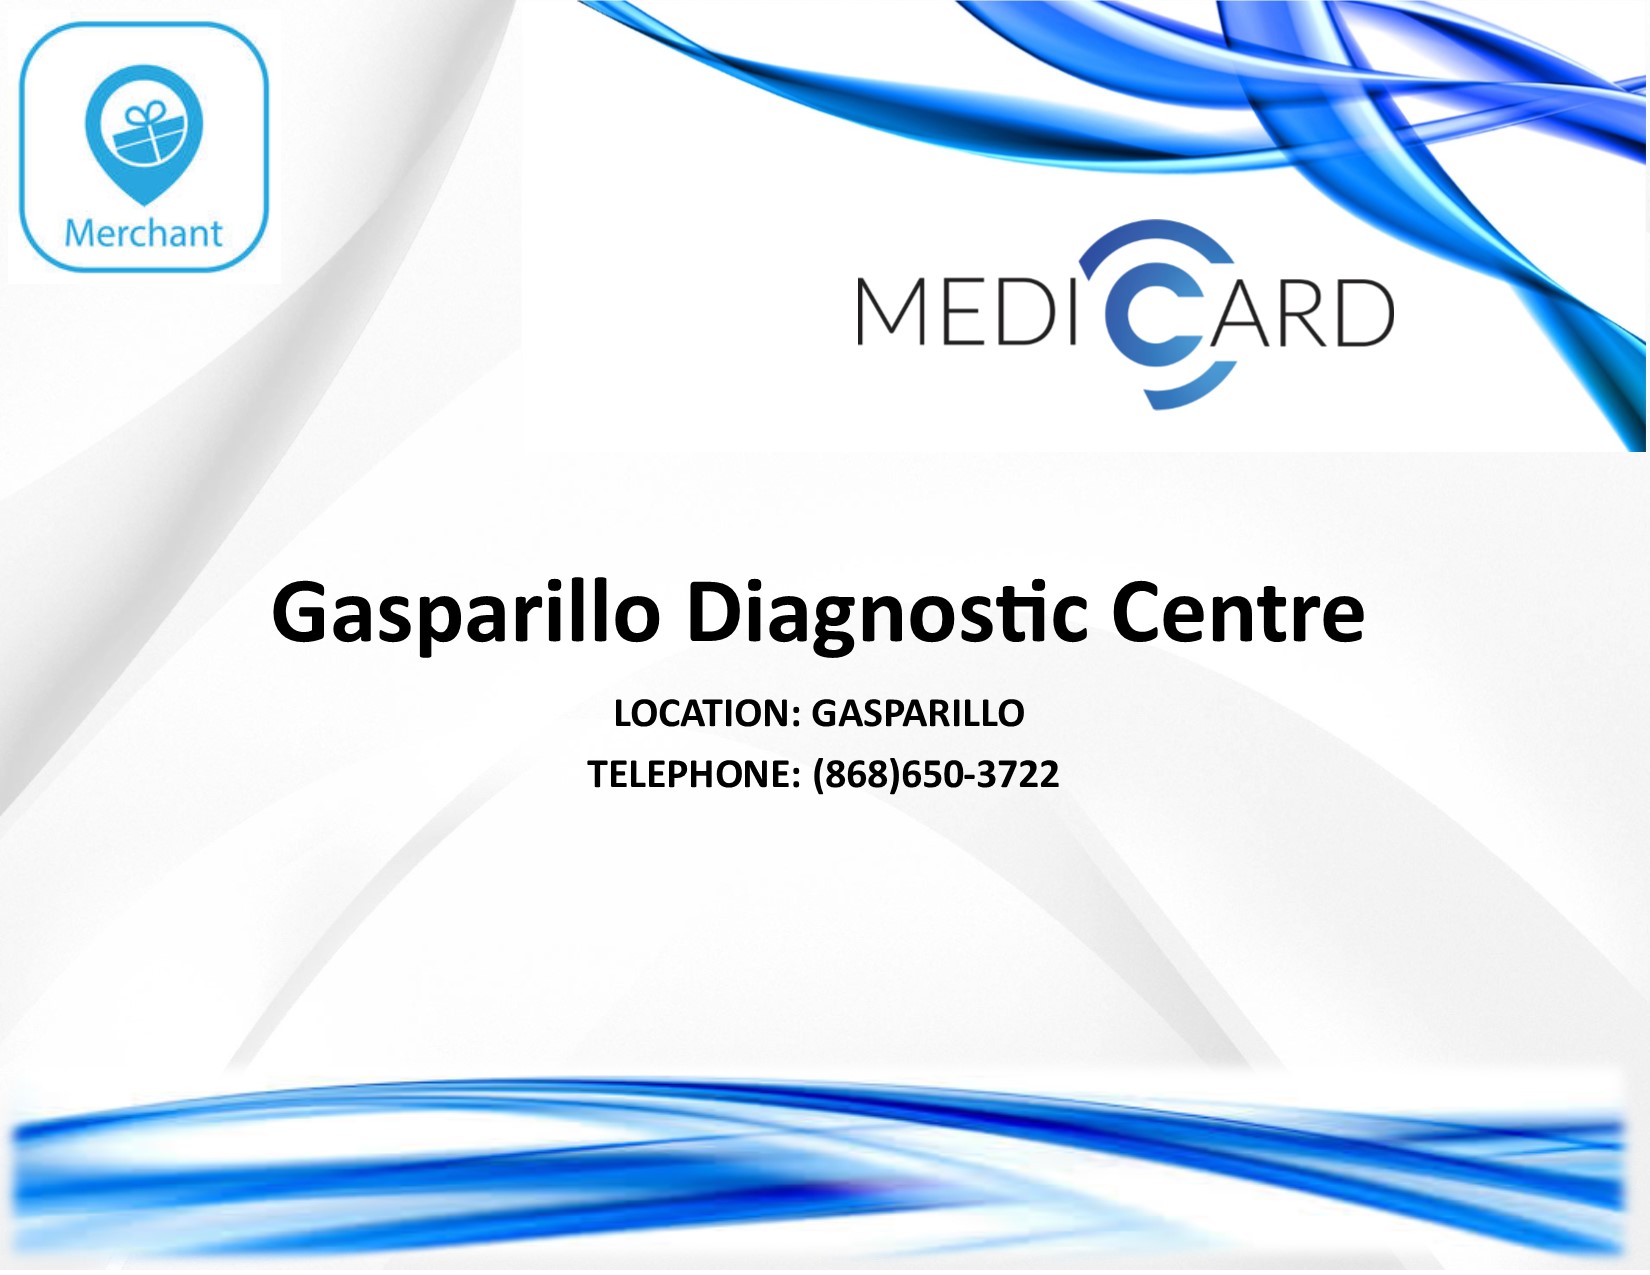 Gasparillo Diagnostic Centre